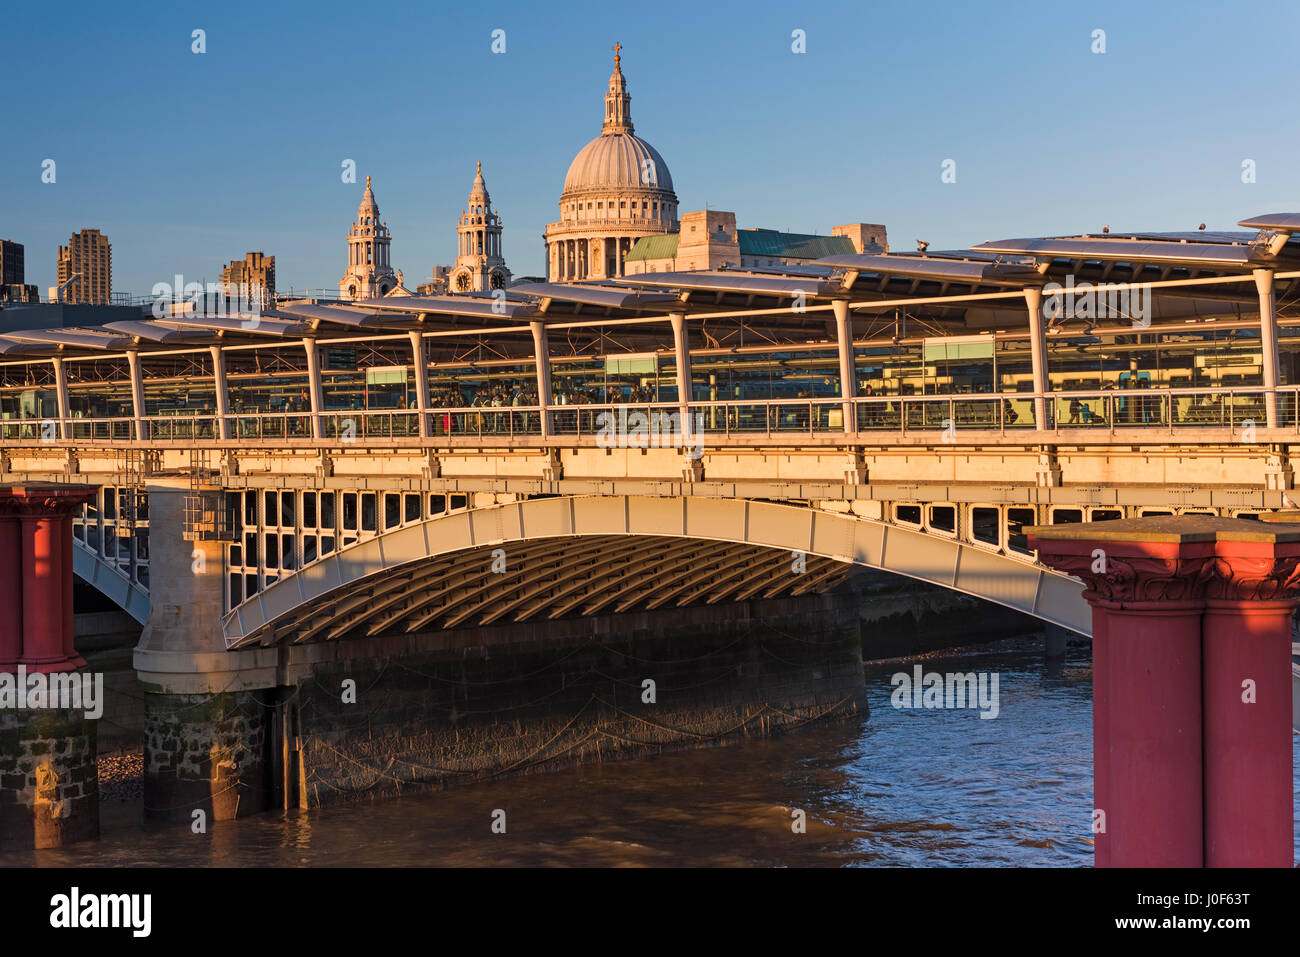 La gare de Blackfriars Bridge et de la Cathédrale St Paul dome London UK Banque D'Images